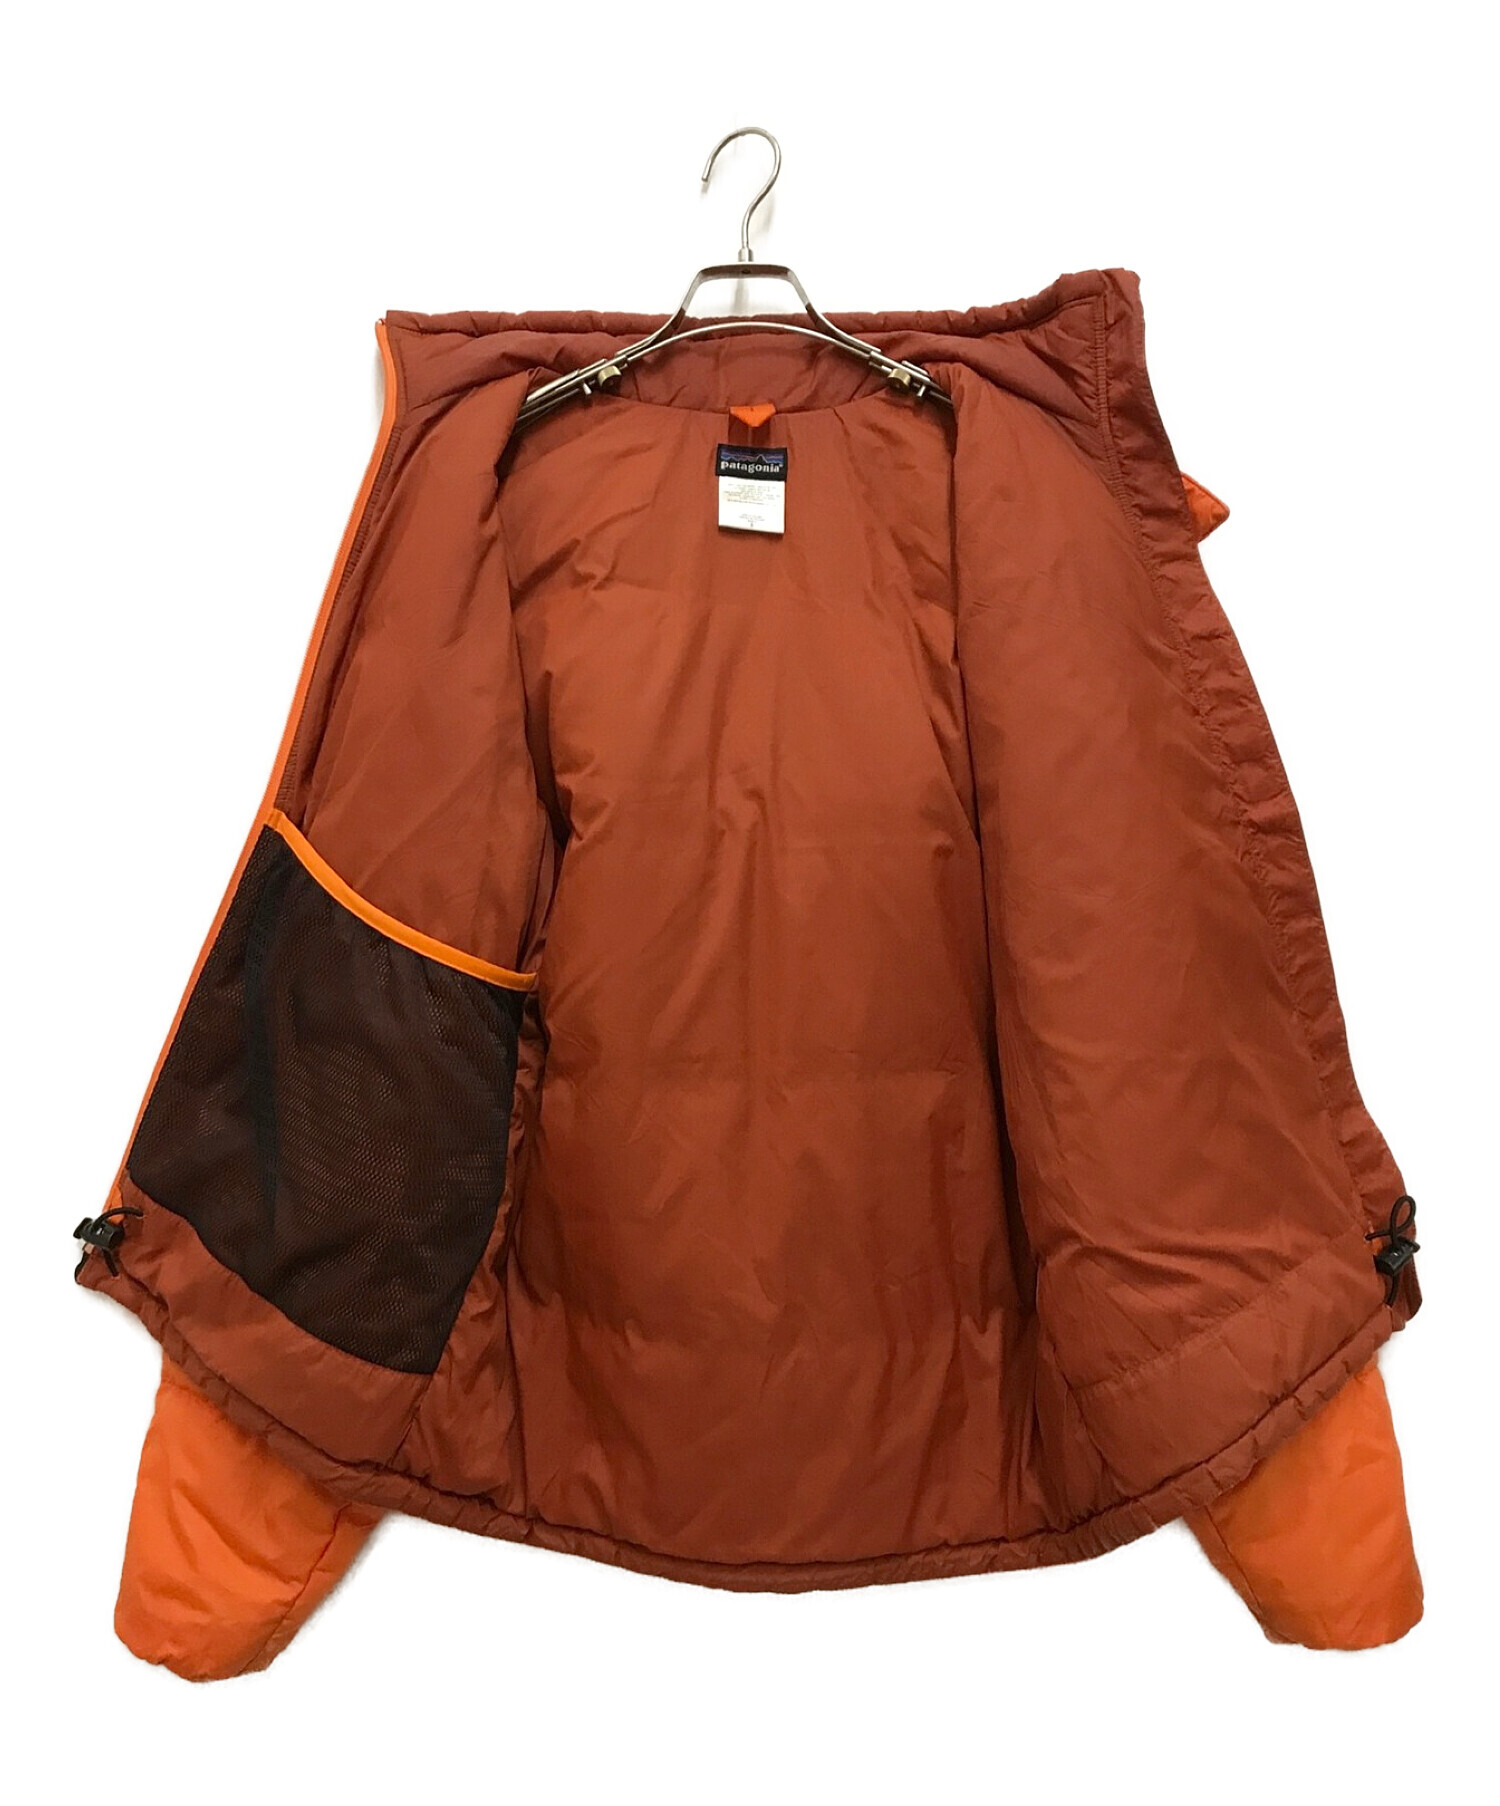 Patagonia (パタゴニア) パフジャケット オレンジ サイズ:S